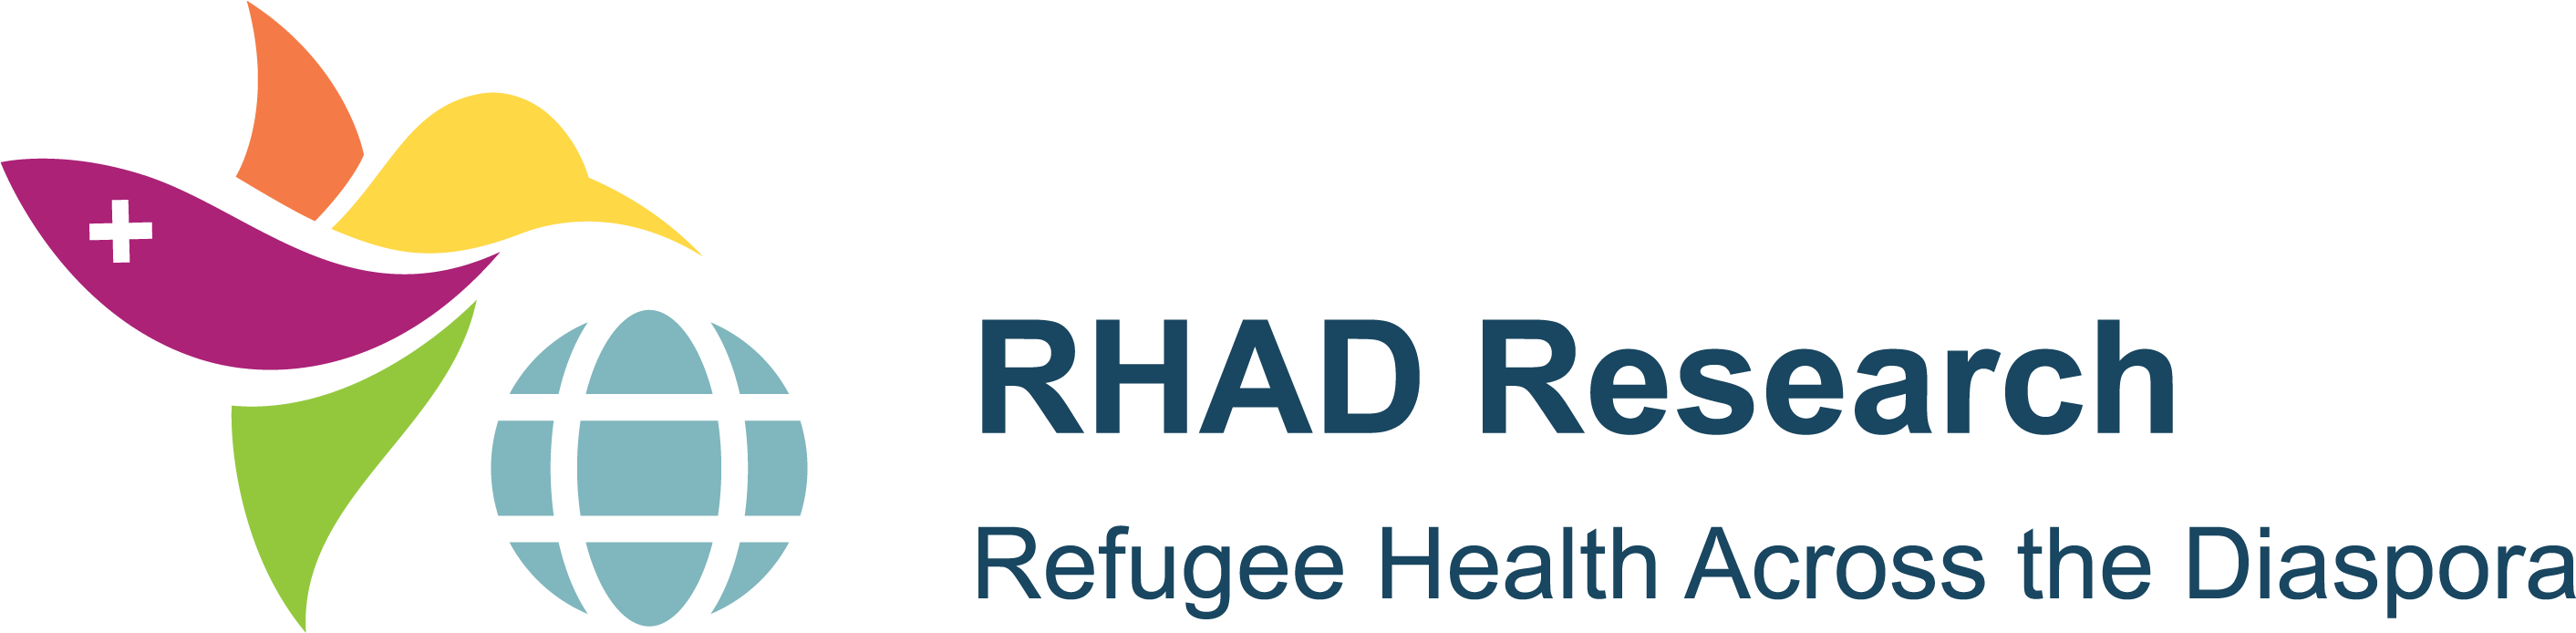 RHAD Research Logo